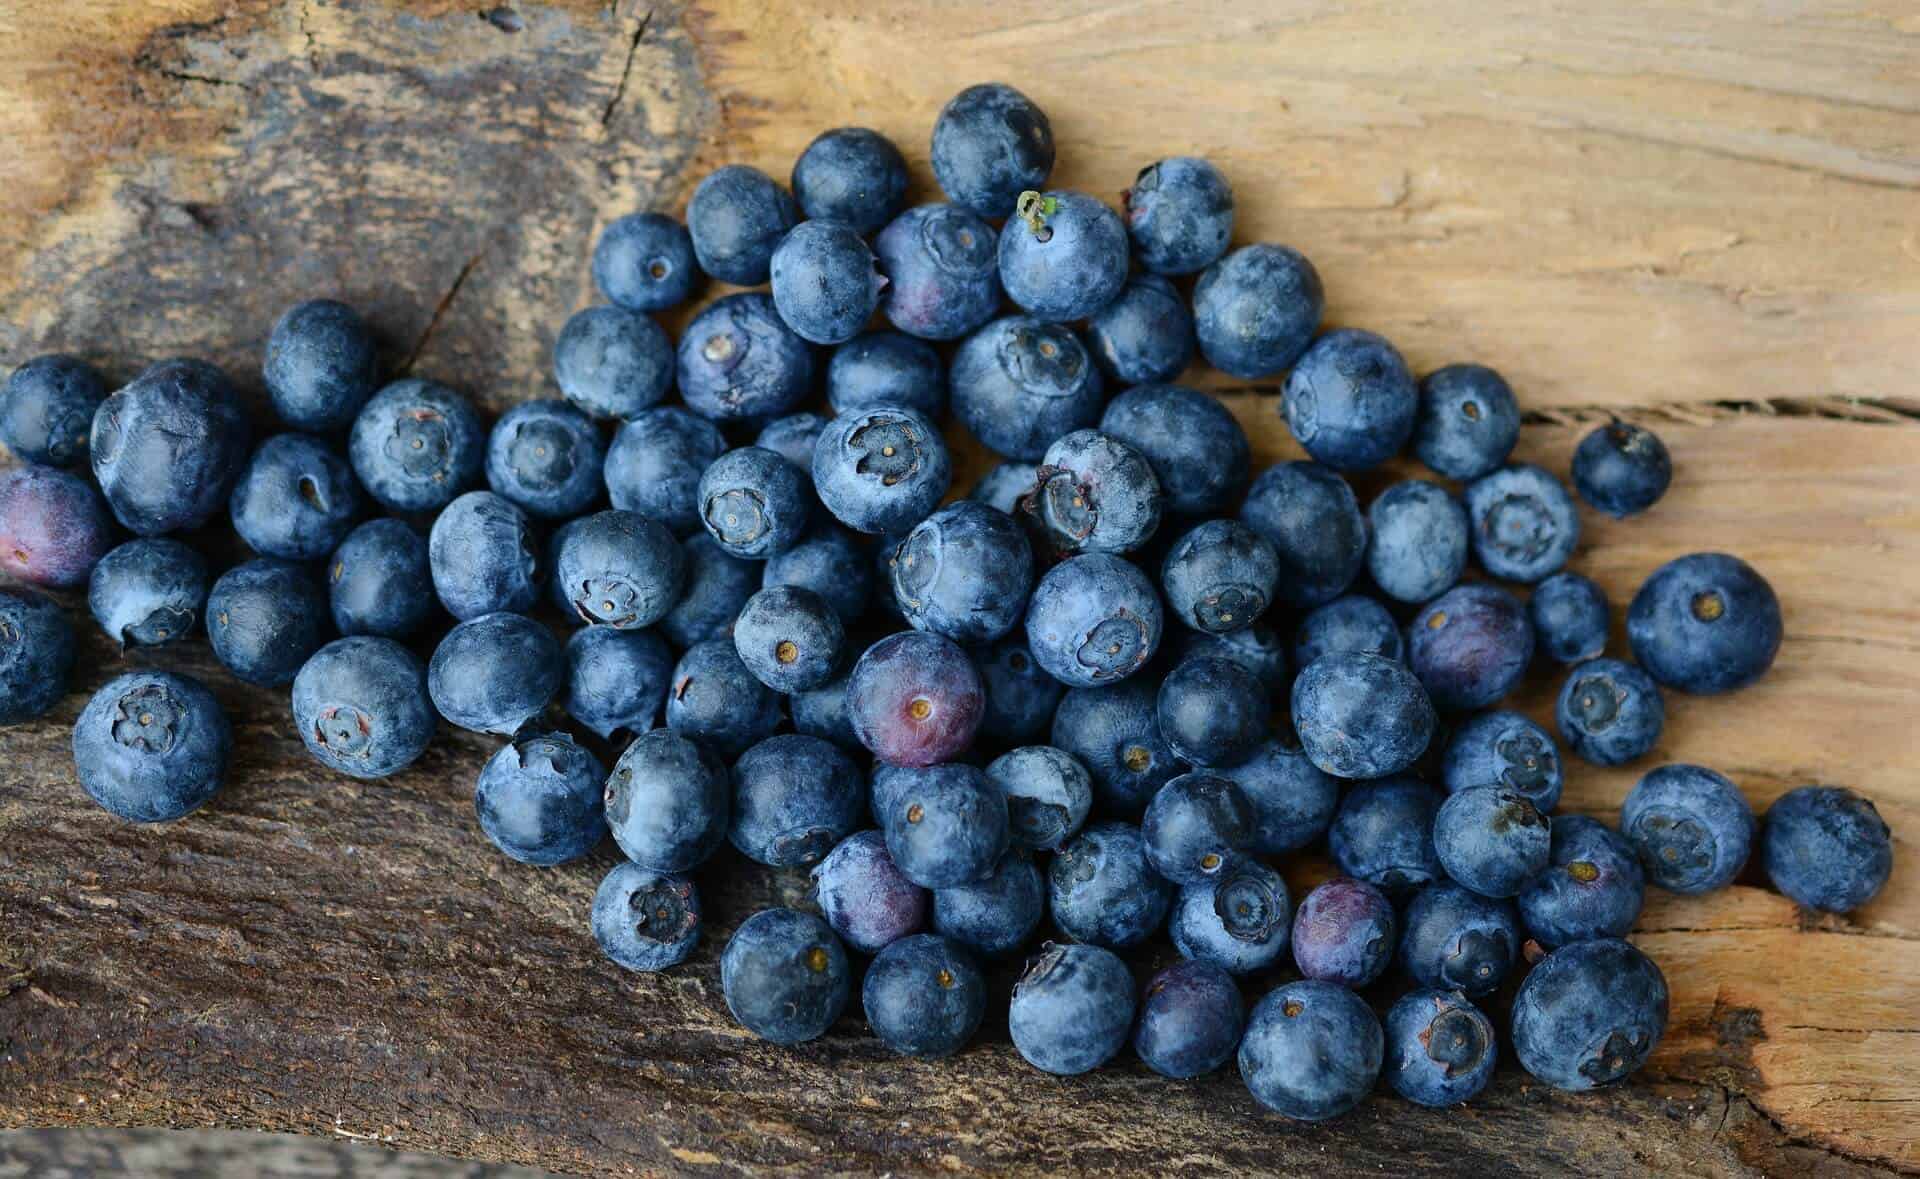 Čo sú to Antioxidanty? - blueberries 2270379 1920 - Čo sú to Antioxidanty?